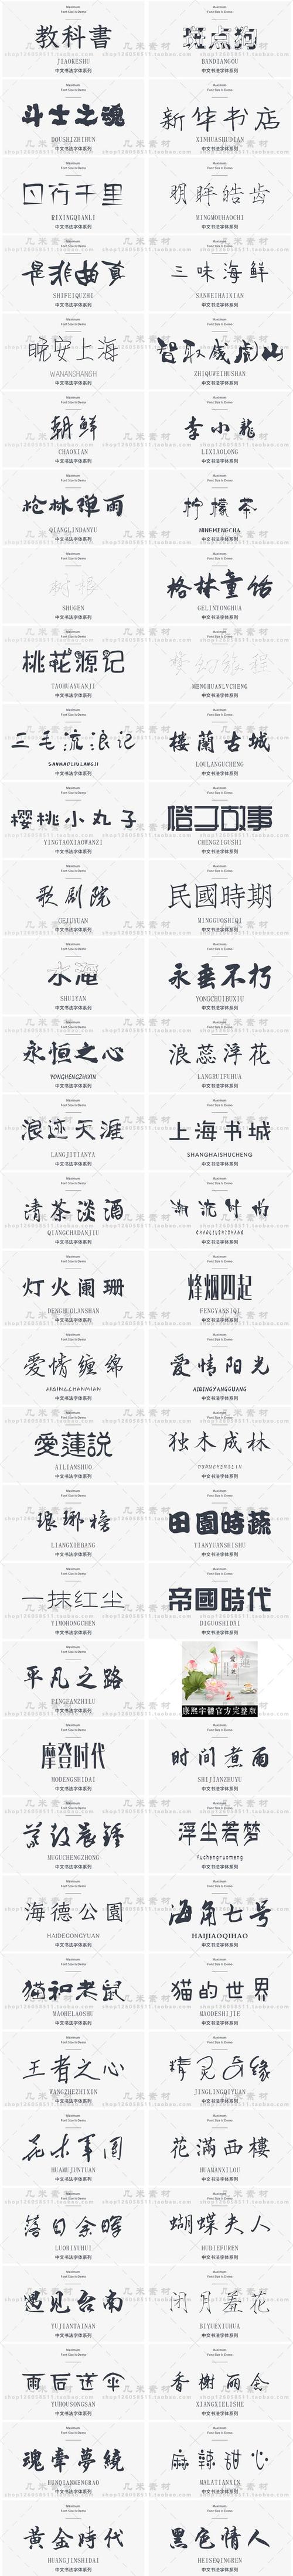 常用字体资源中文美工设计简繁体书法广告字体包logo平面素材合集